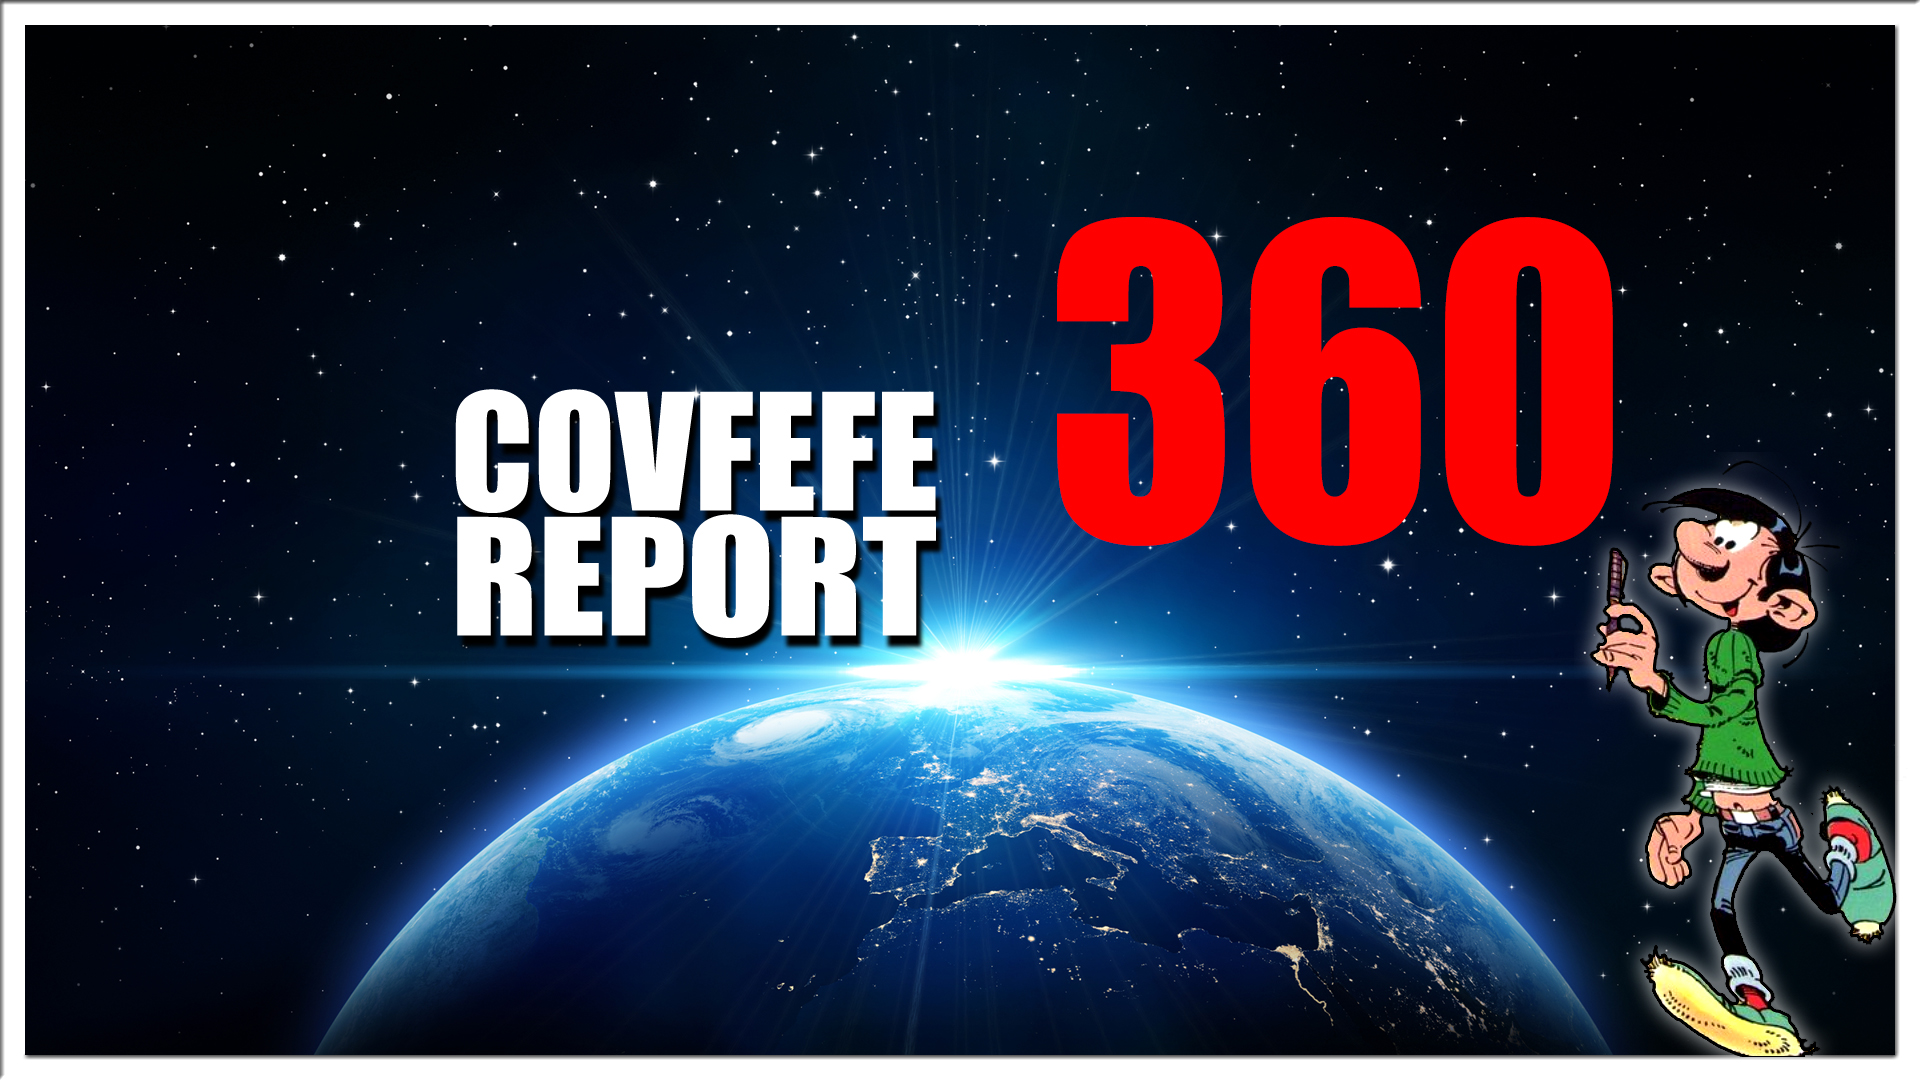 Covfefe Report 360. DC will be wild, Paniek, Vrij en Sociaal, Hugo hufter, Corona debat